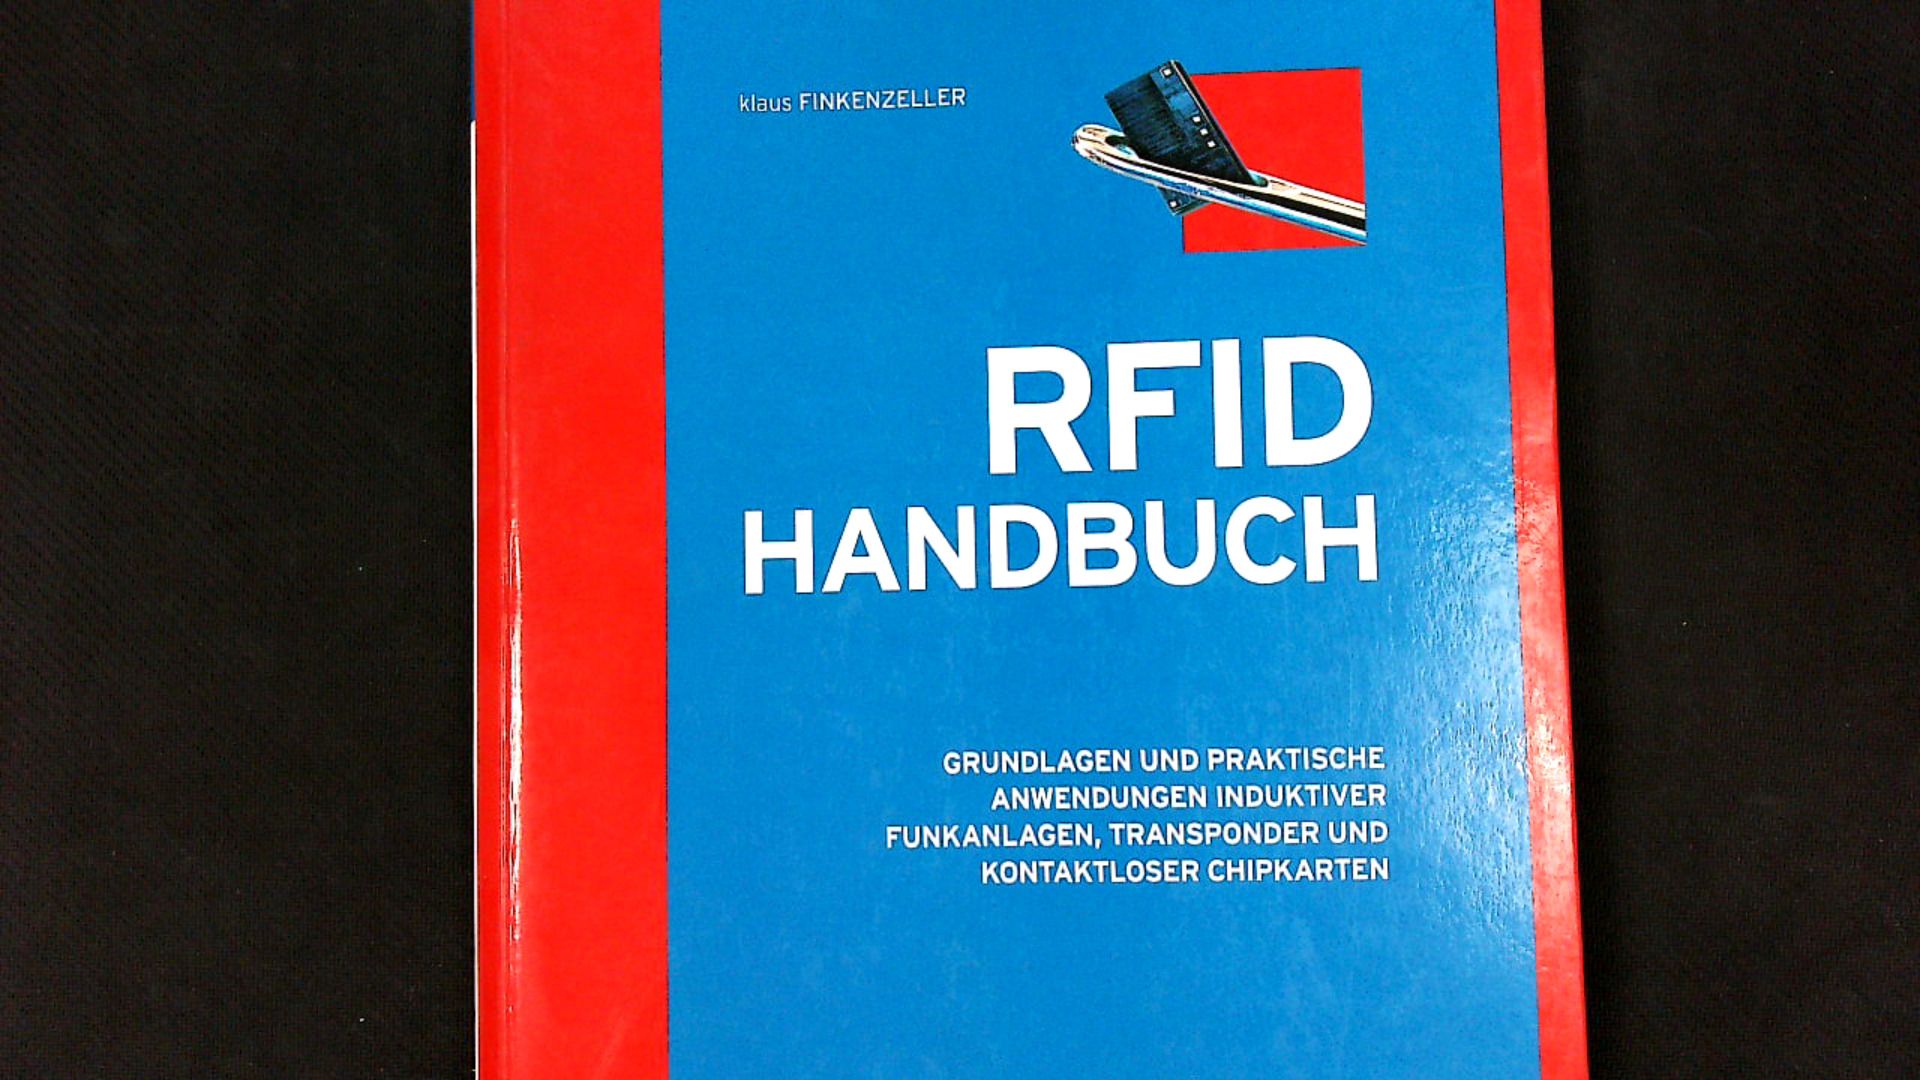 RFID-Handbuch: Grundlagen und praktische Anwendungen induktiver Funkanlagen, Transponder und kontaktloser Chipkarten. - Finkenzeller, Klaus